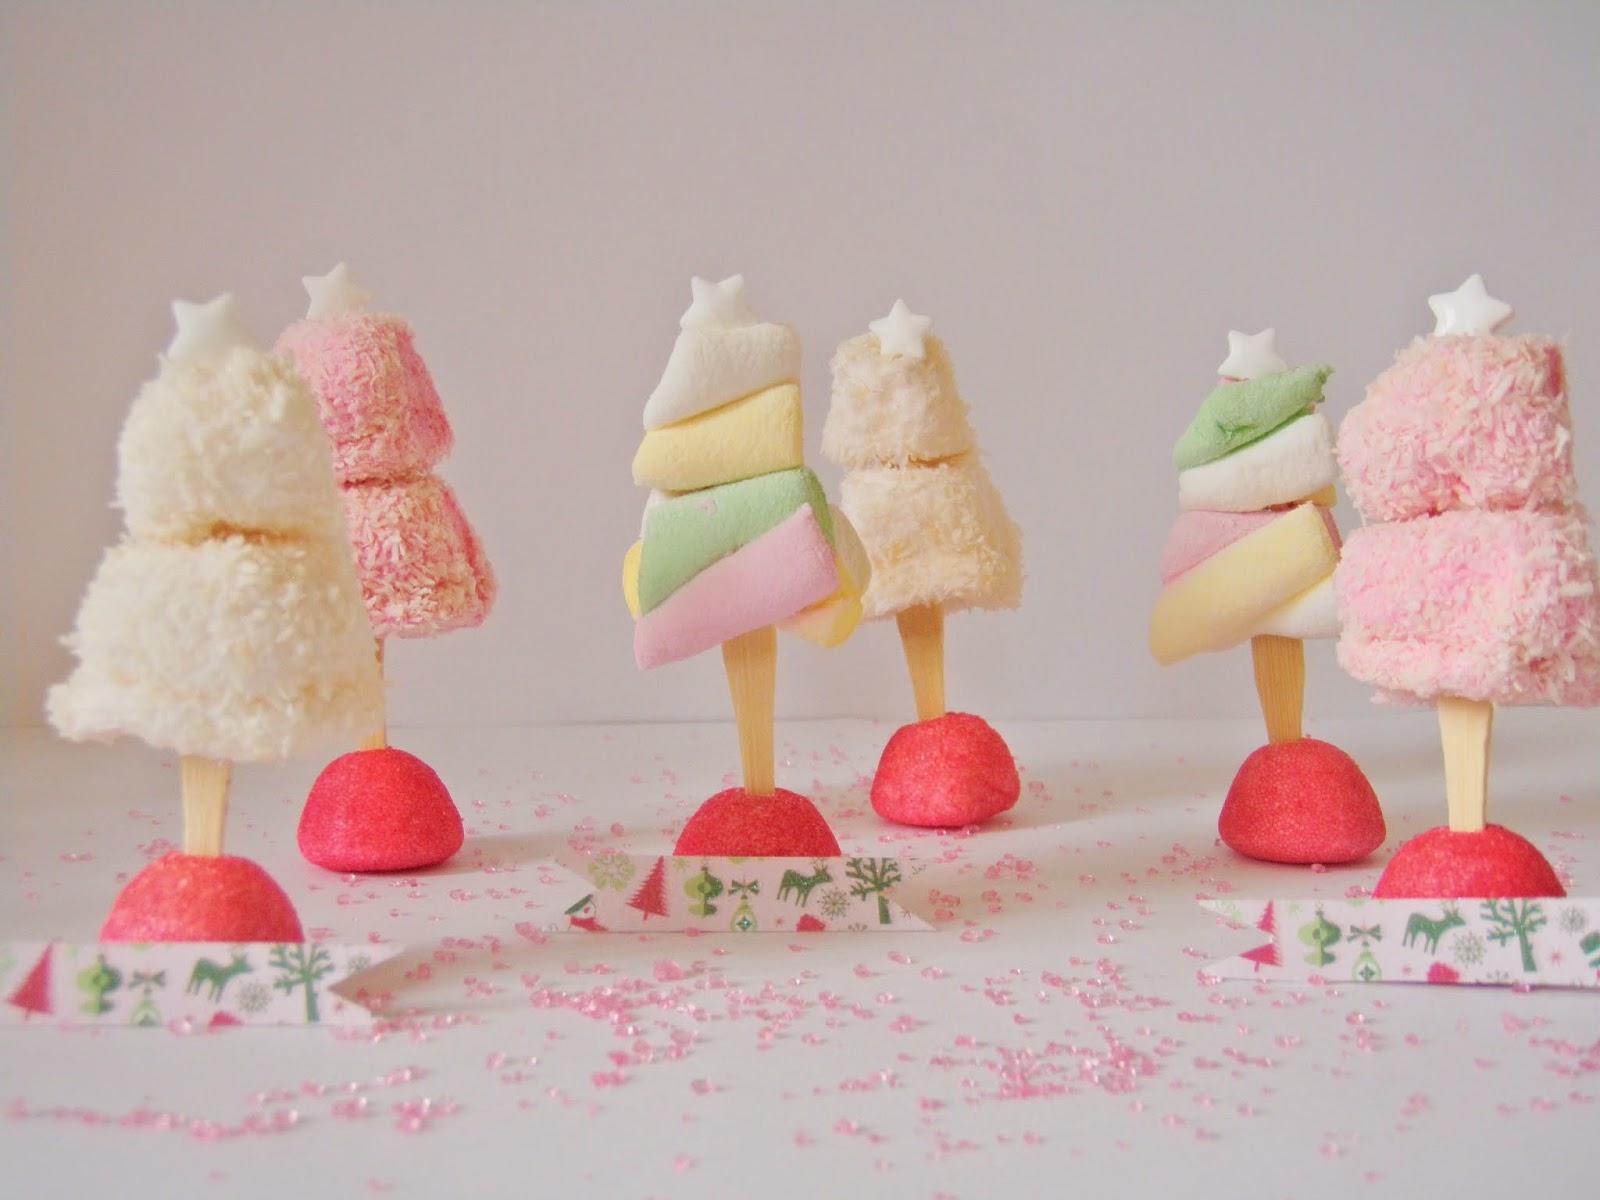 Noël pastel et sucré #5 : Des sapins marque-places en bonbons